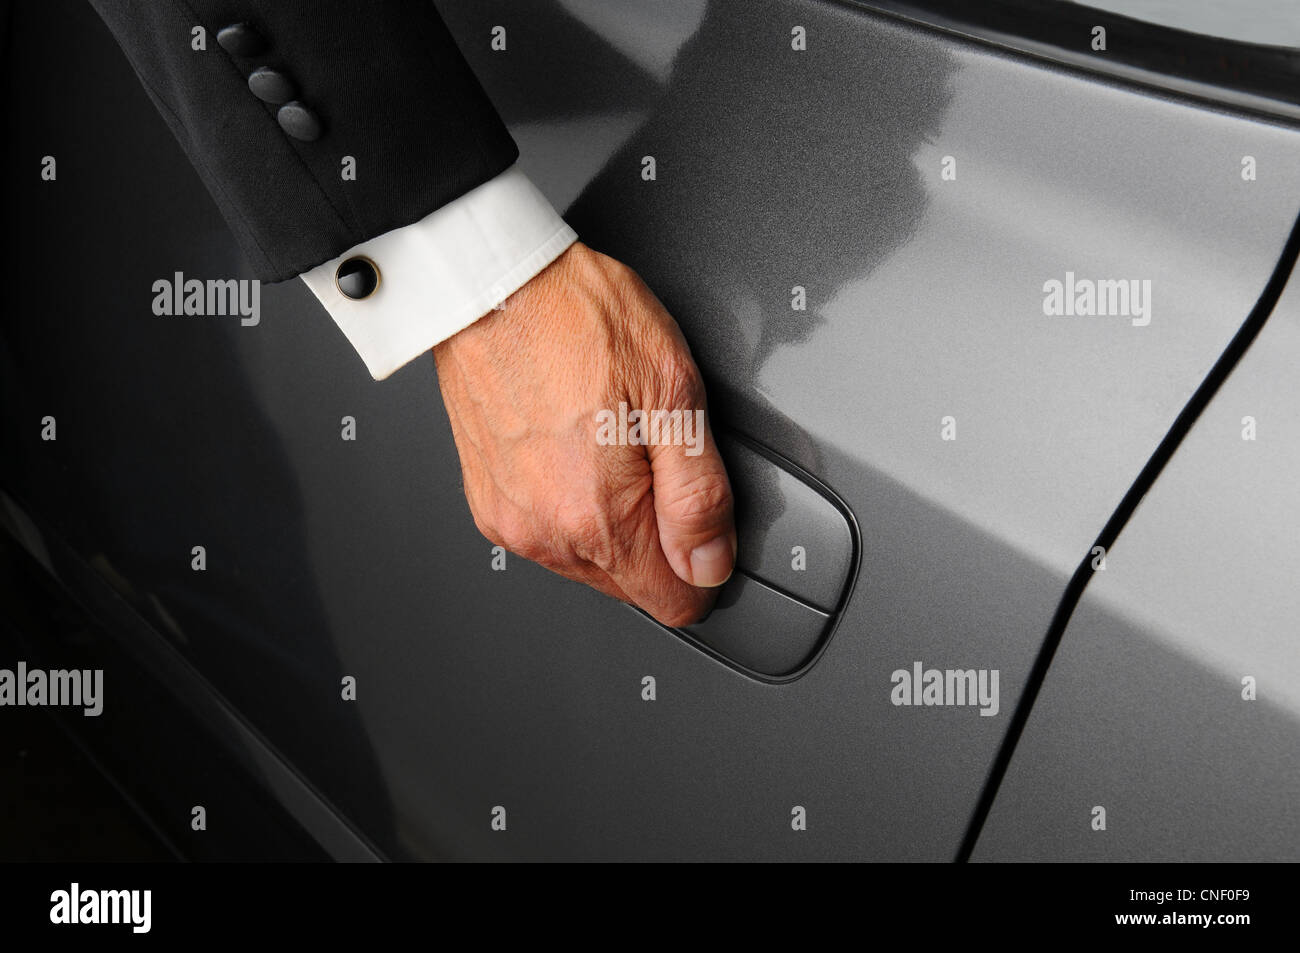 Un gros plan du mans part sur le loquet d'une porte de la voiture. Personne porte un smoking. Banque D'Images